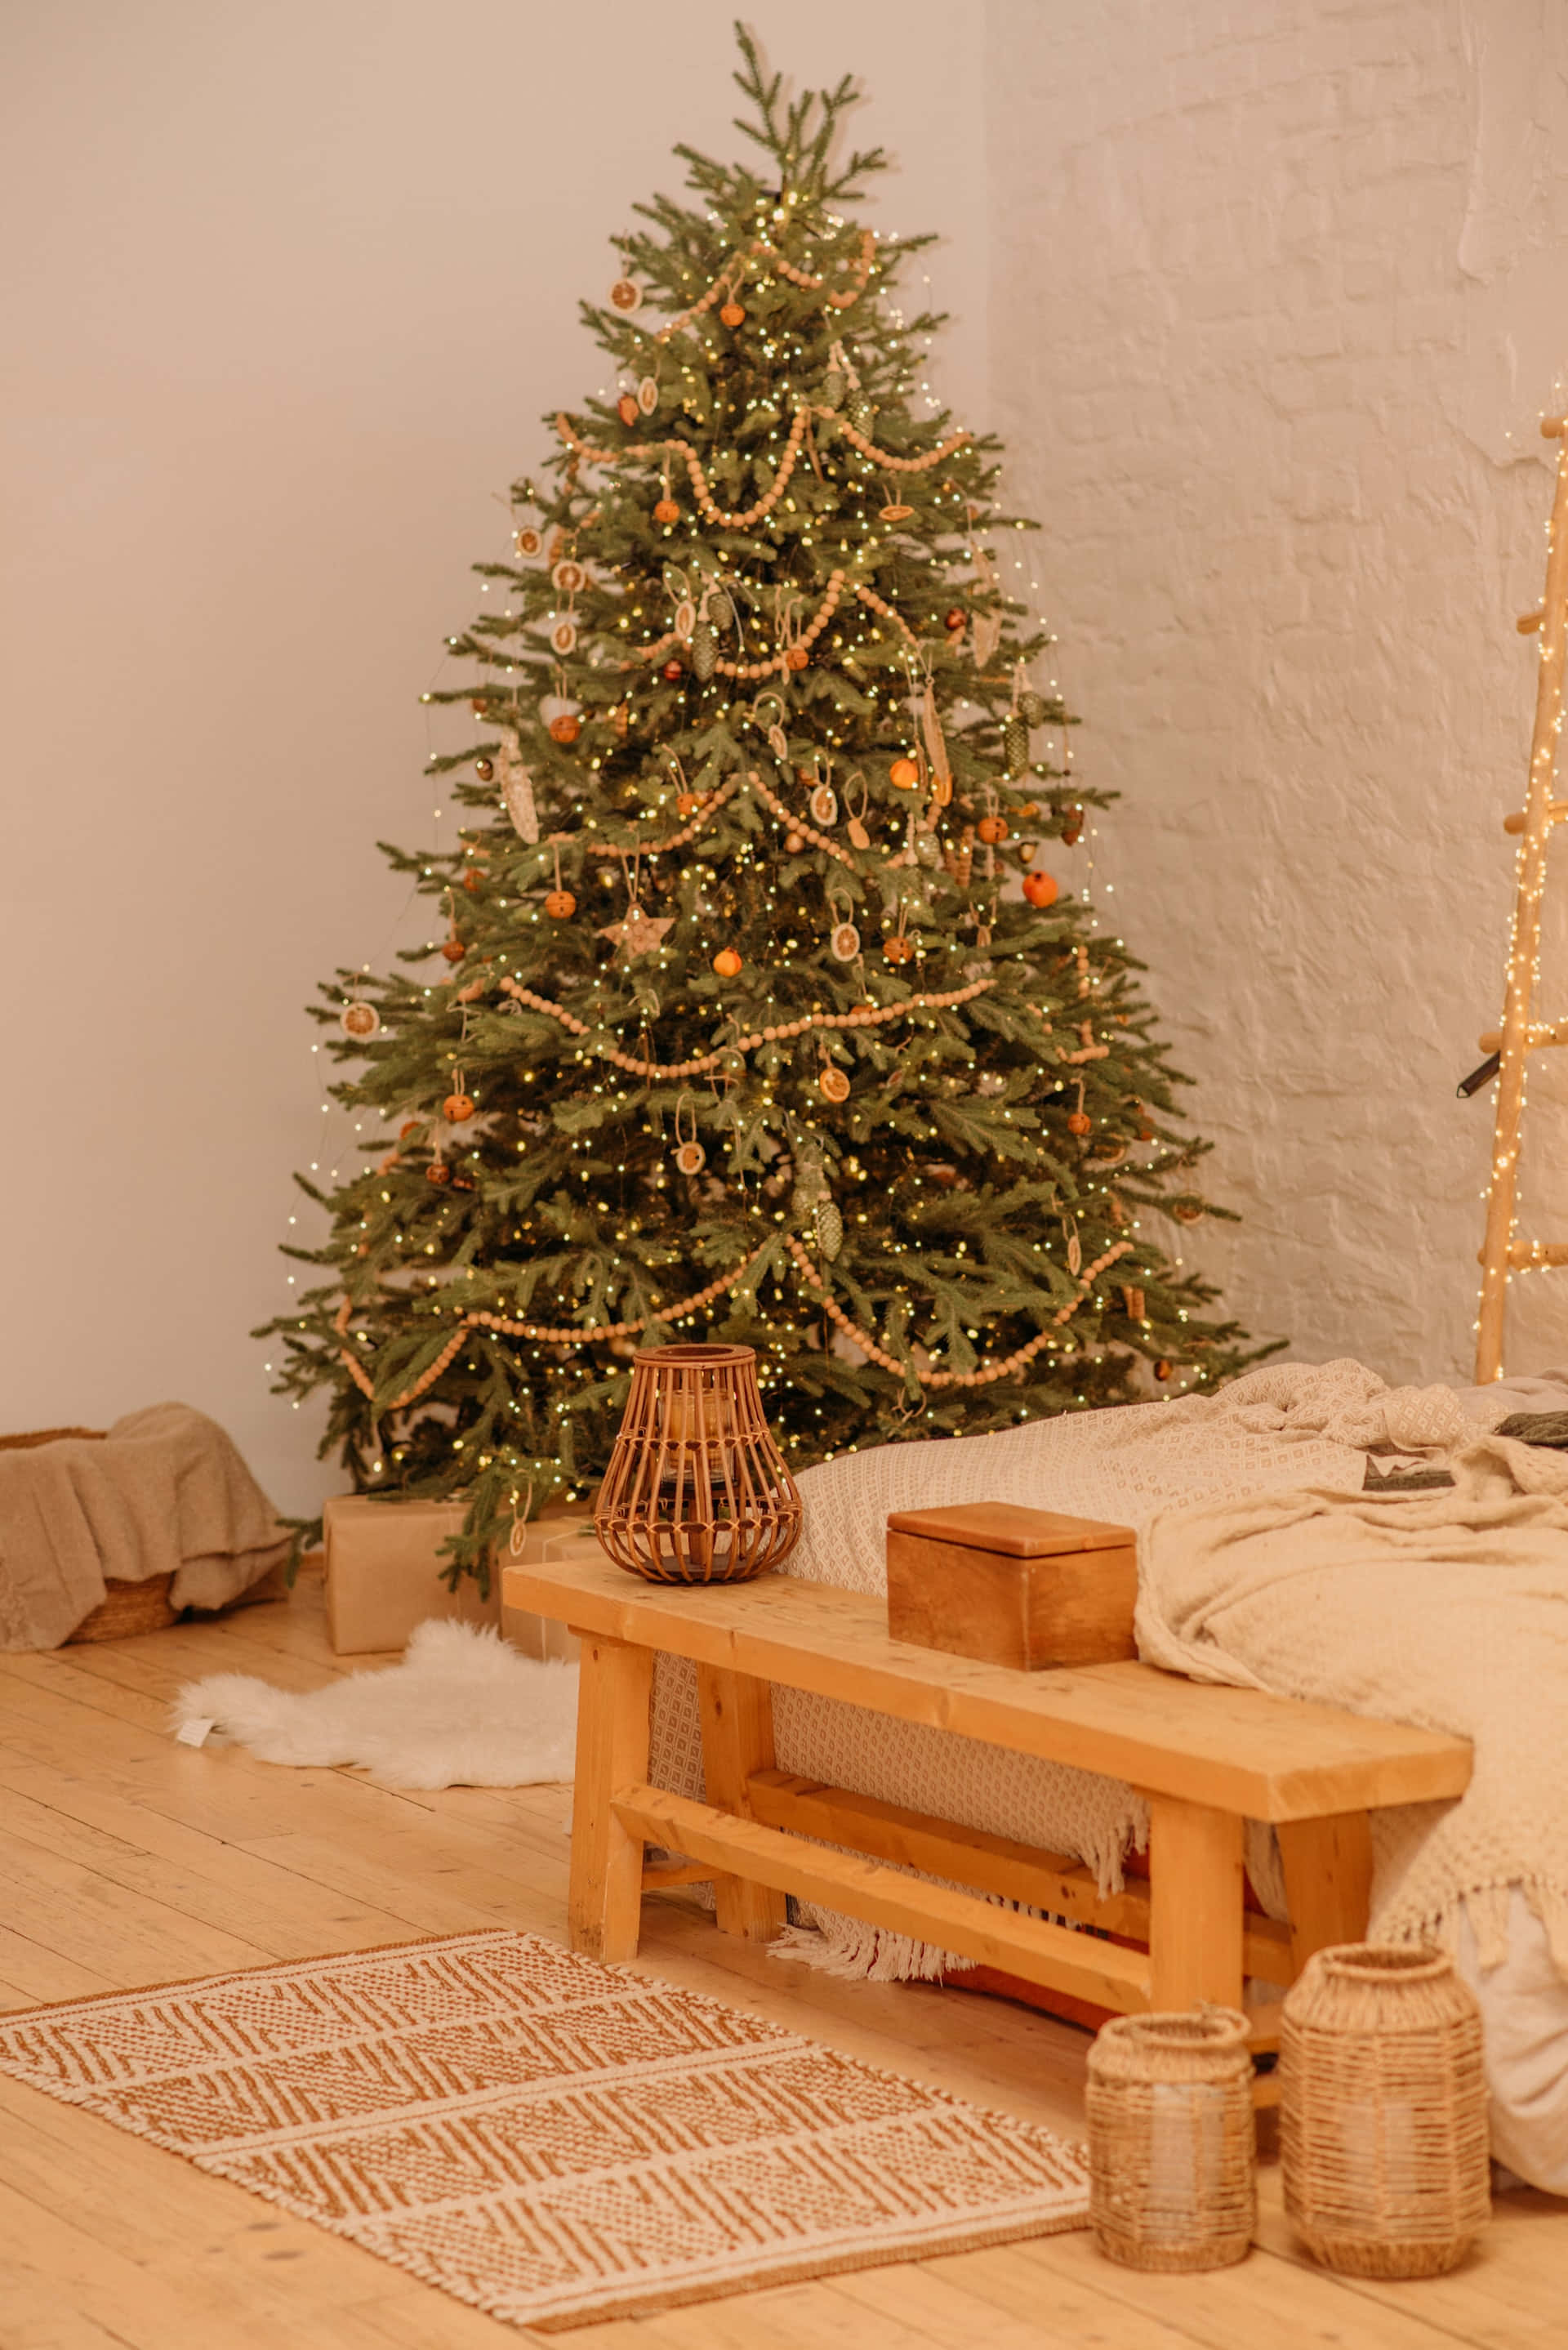 Einweihnachtsbaum In Einem Raum Mit Einem Bett Und Einer Leiter Wallpaper